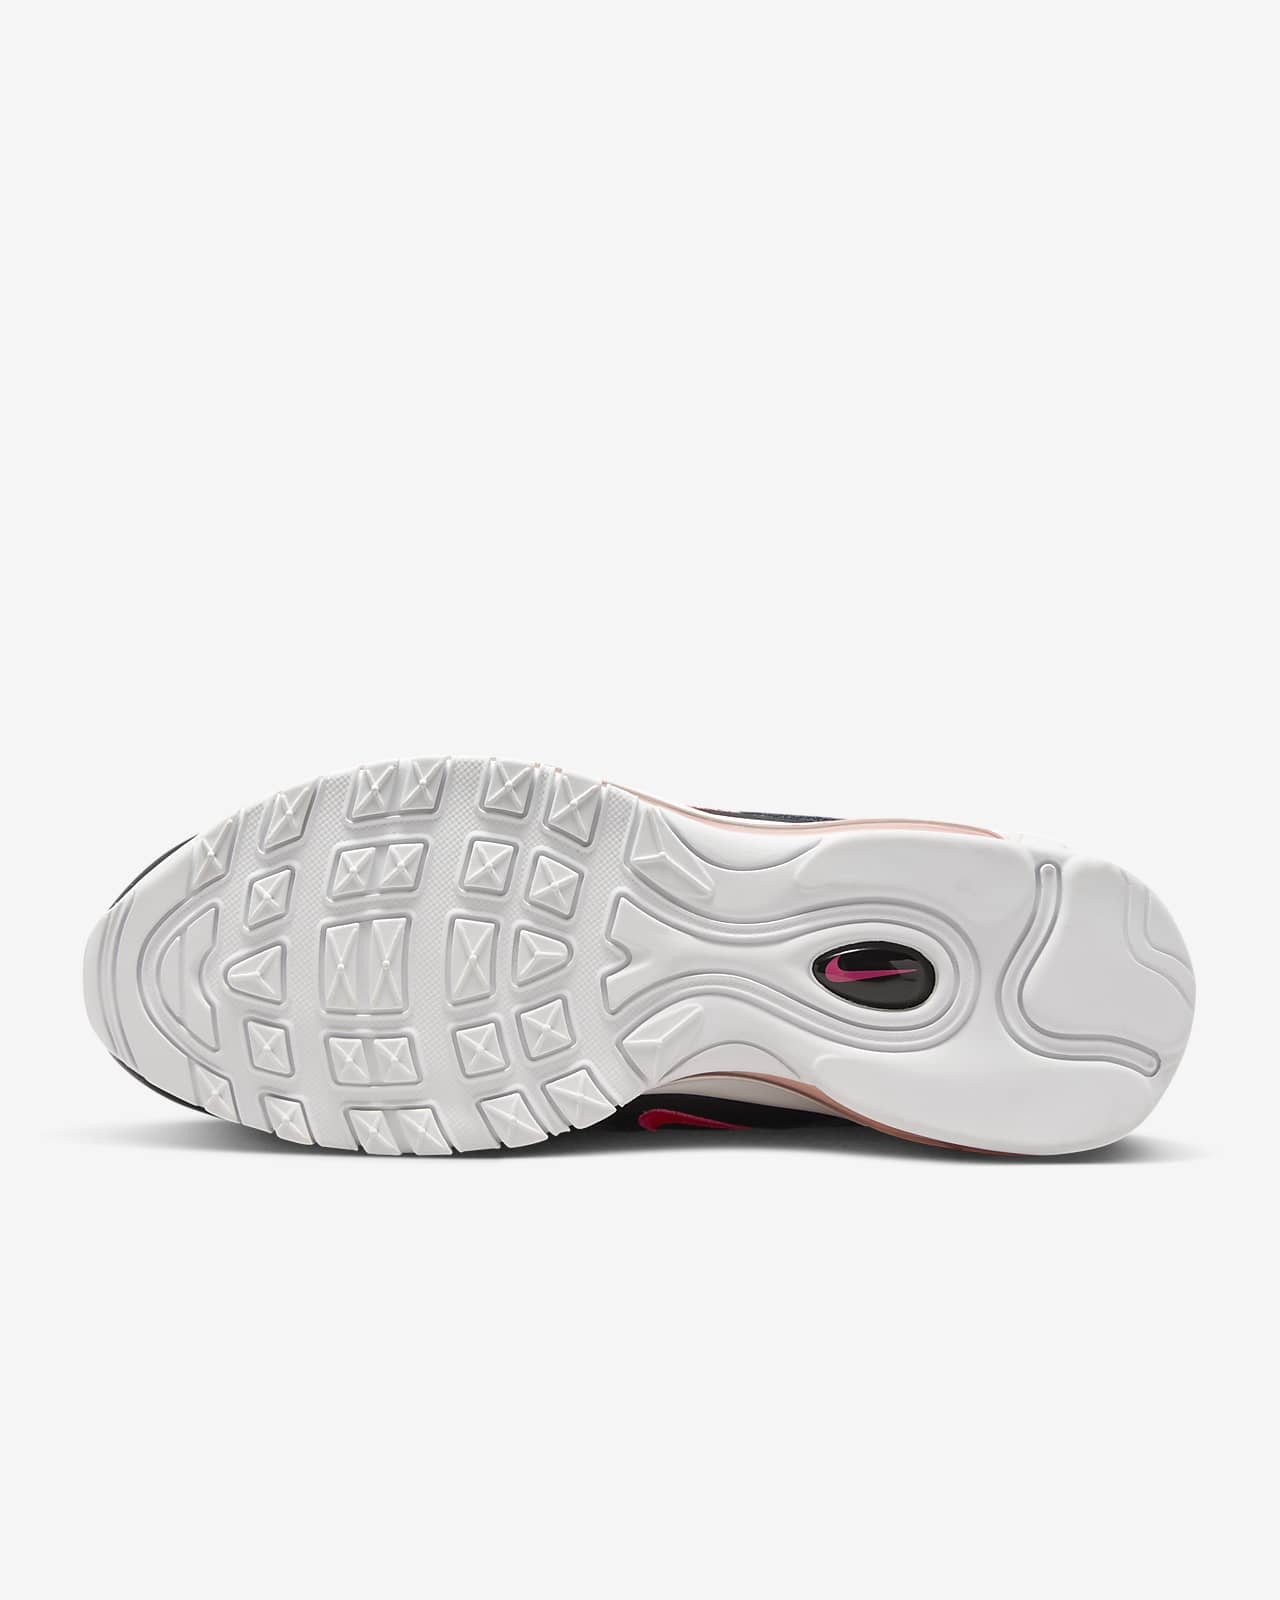 Nike Air Max 97 White Silver